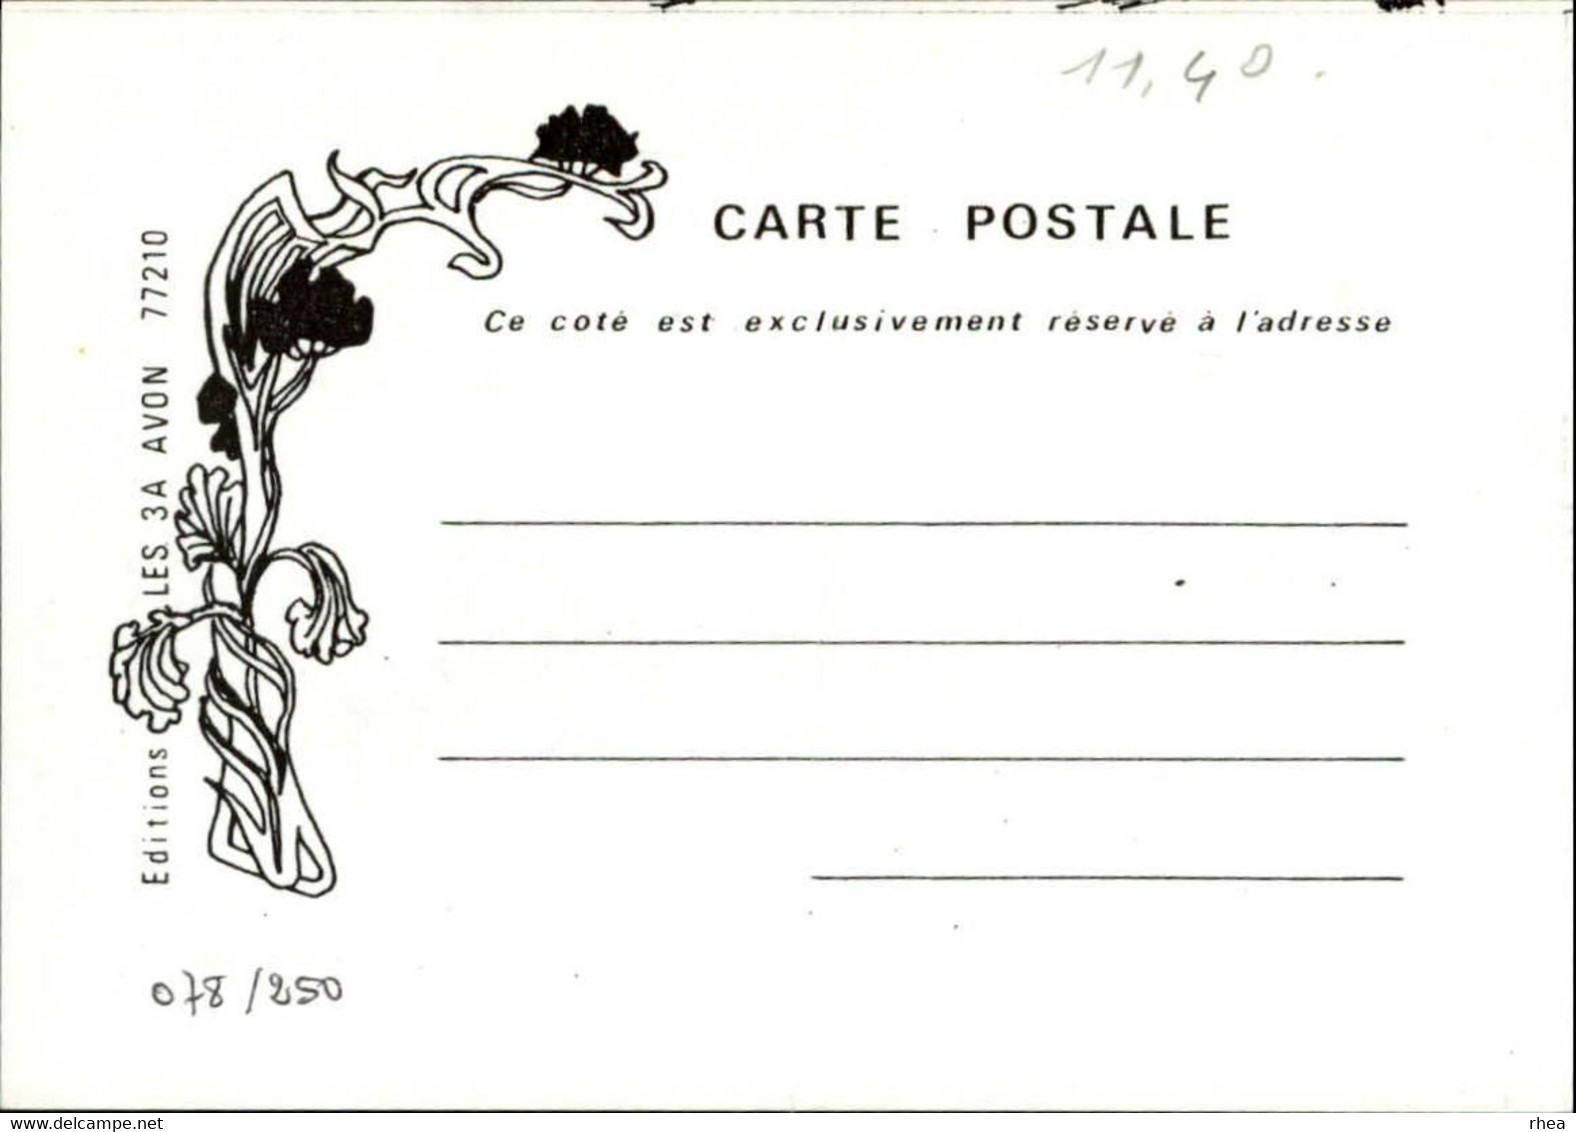 SALONS DE COLLECTIONS - Bourse D'échanges - Salon De Cartes Postales - 77 AVON - 1981 - Bourses & Salons De Collections